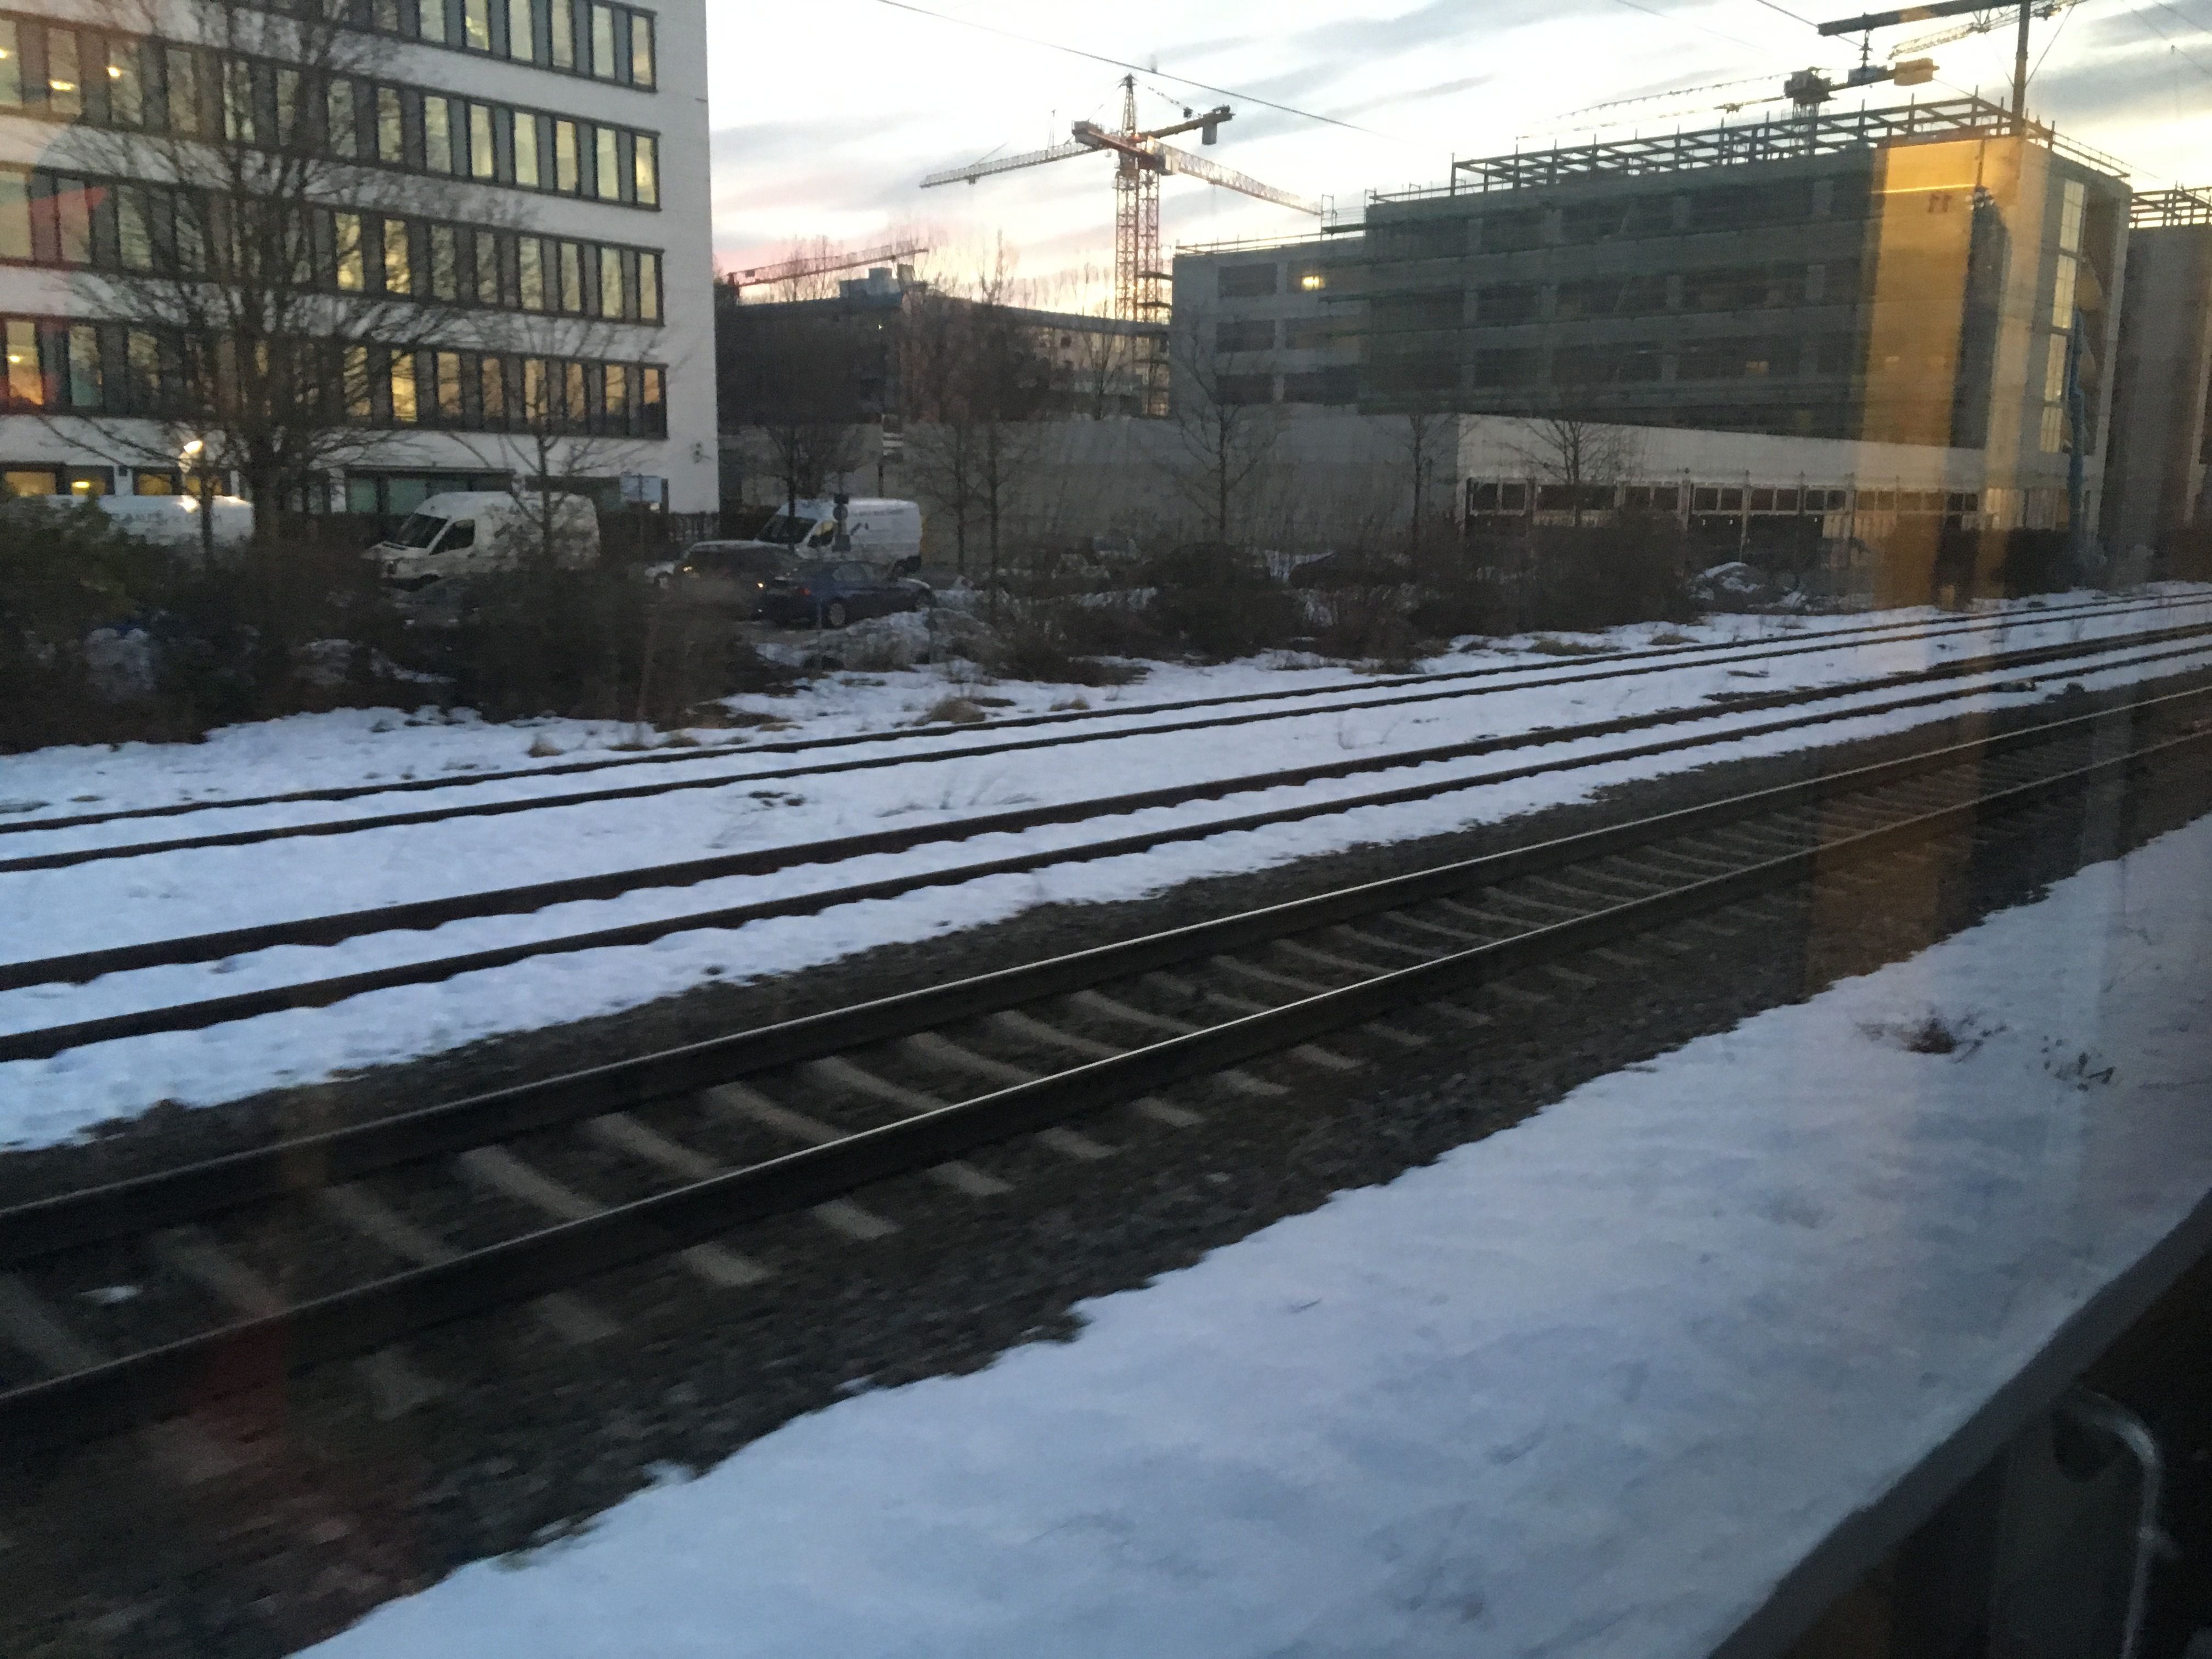 Op de sporen in München ligt er al wat sneeuw